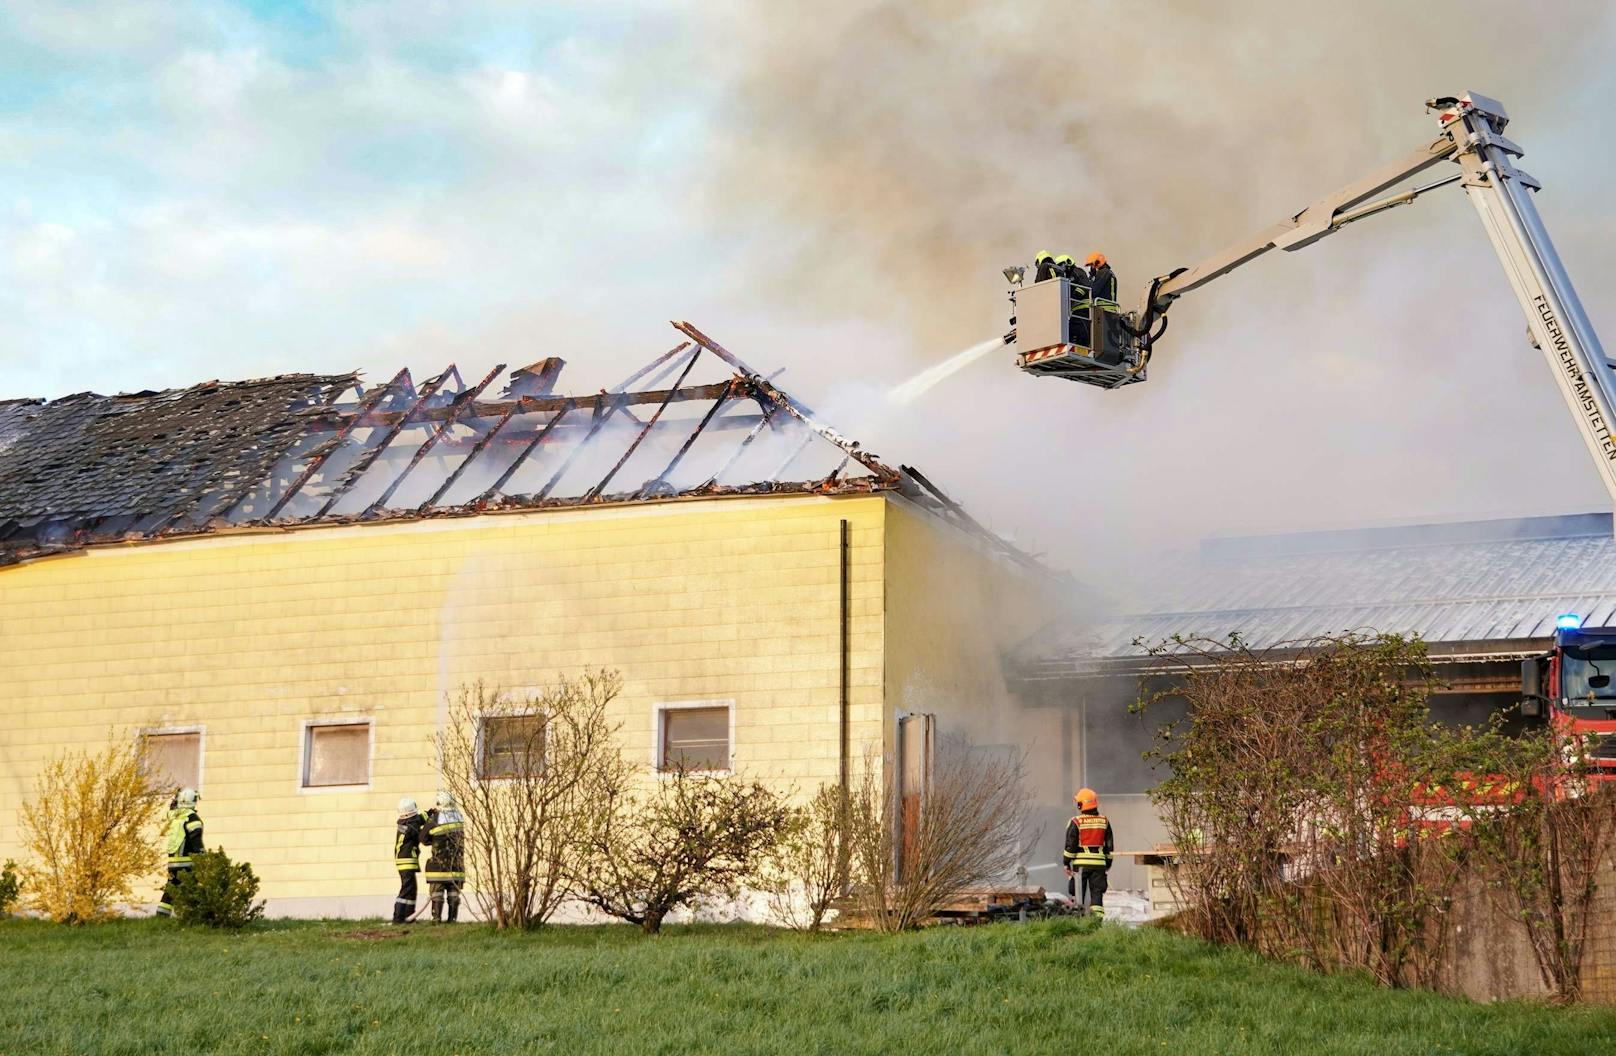 Großbrand in NÖ: Bauernhof in Flammen